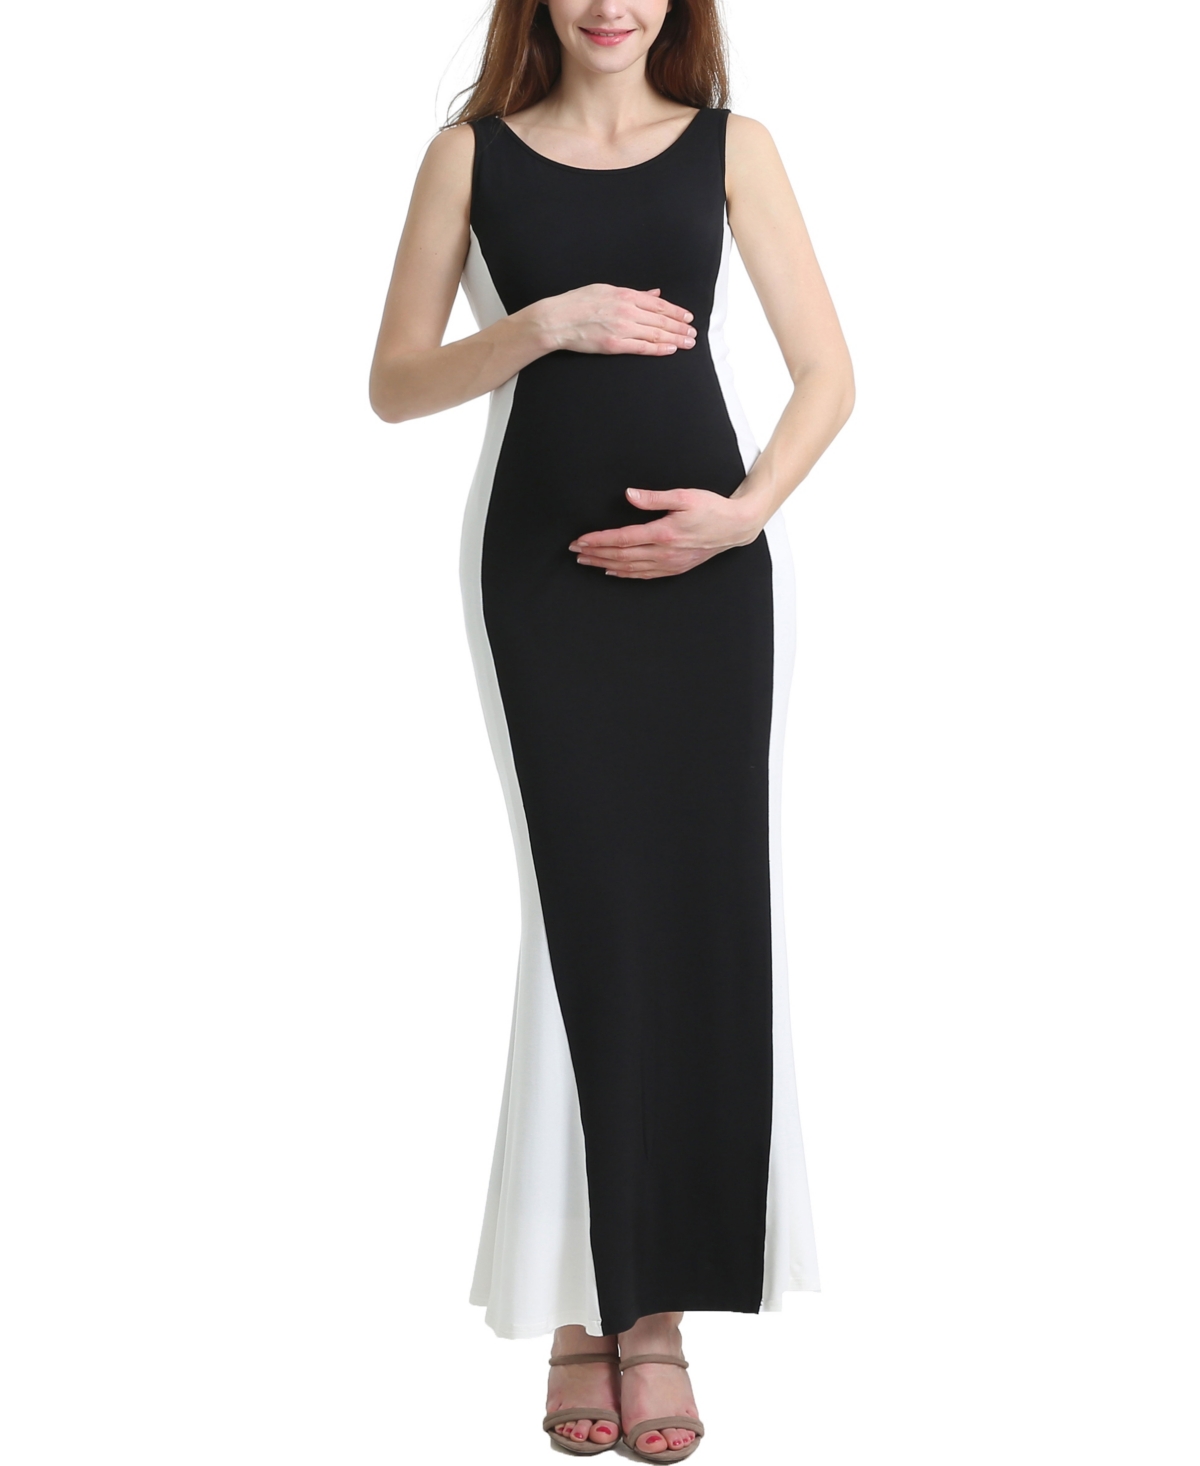 kimi + kai Maternity Phoebe Colorblock Maxi Dress - Black/white